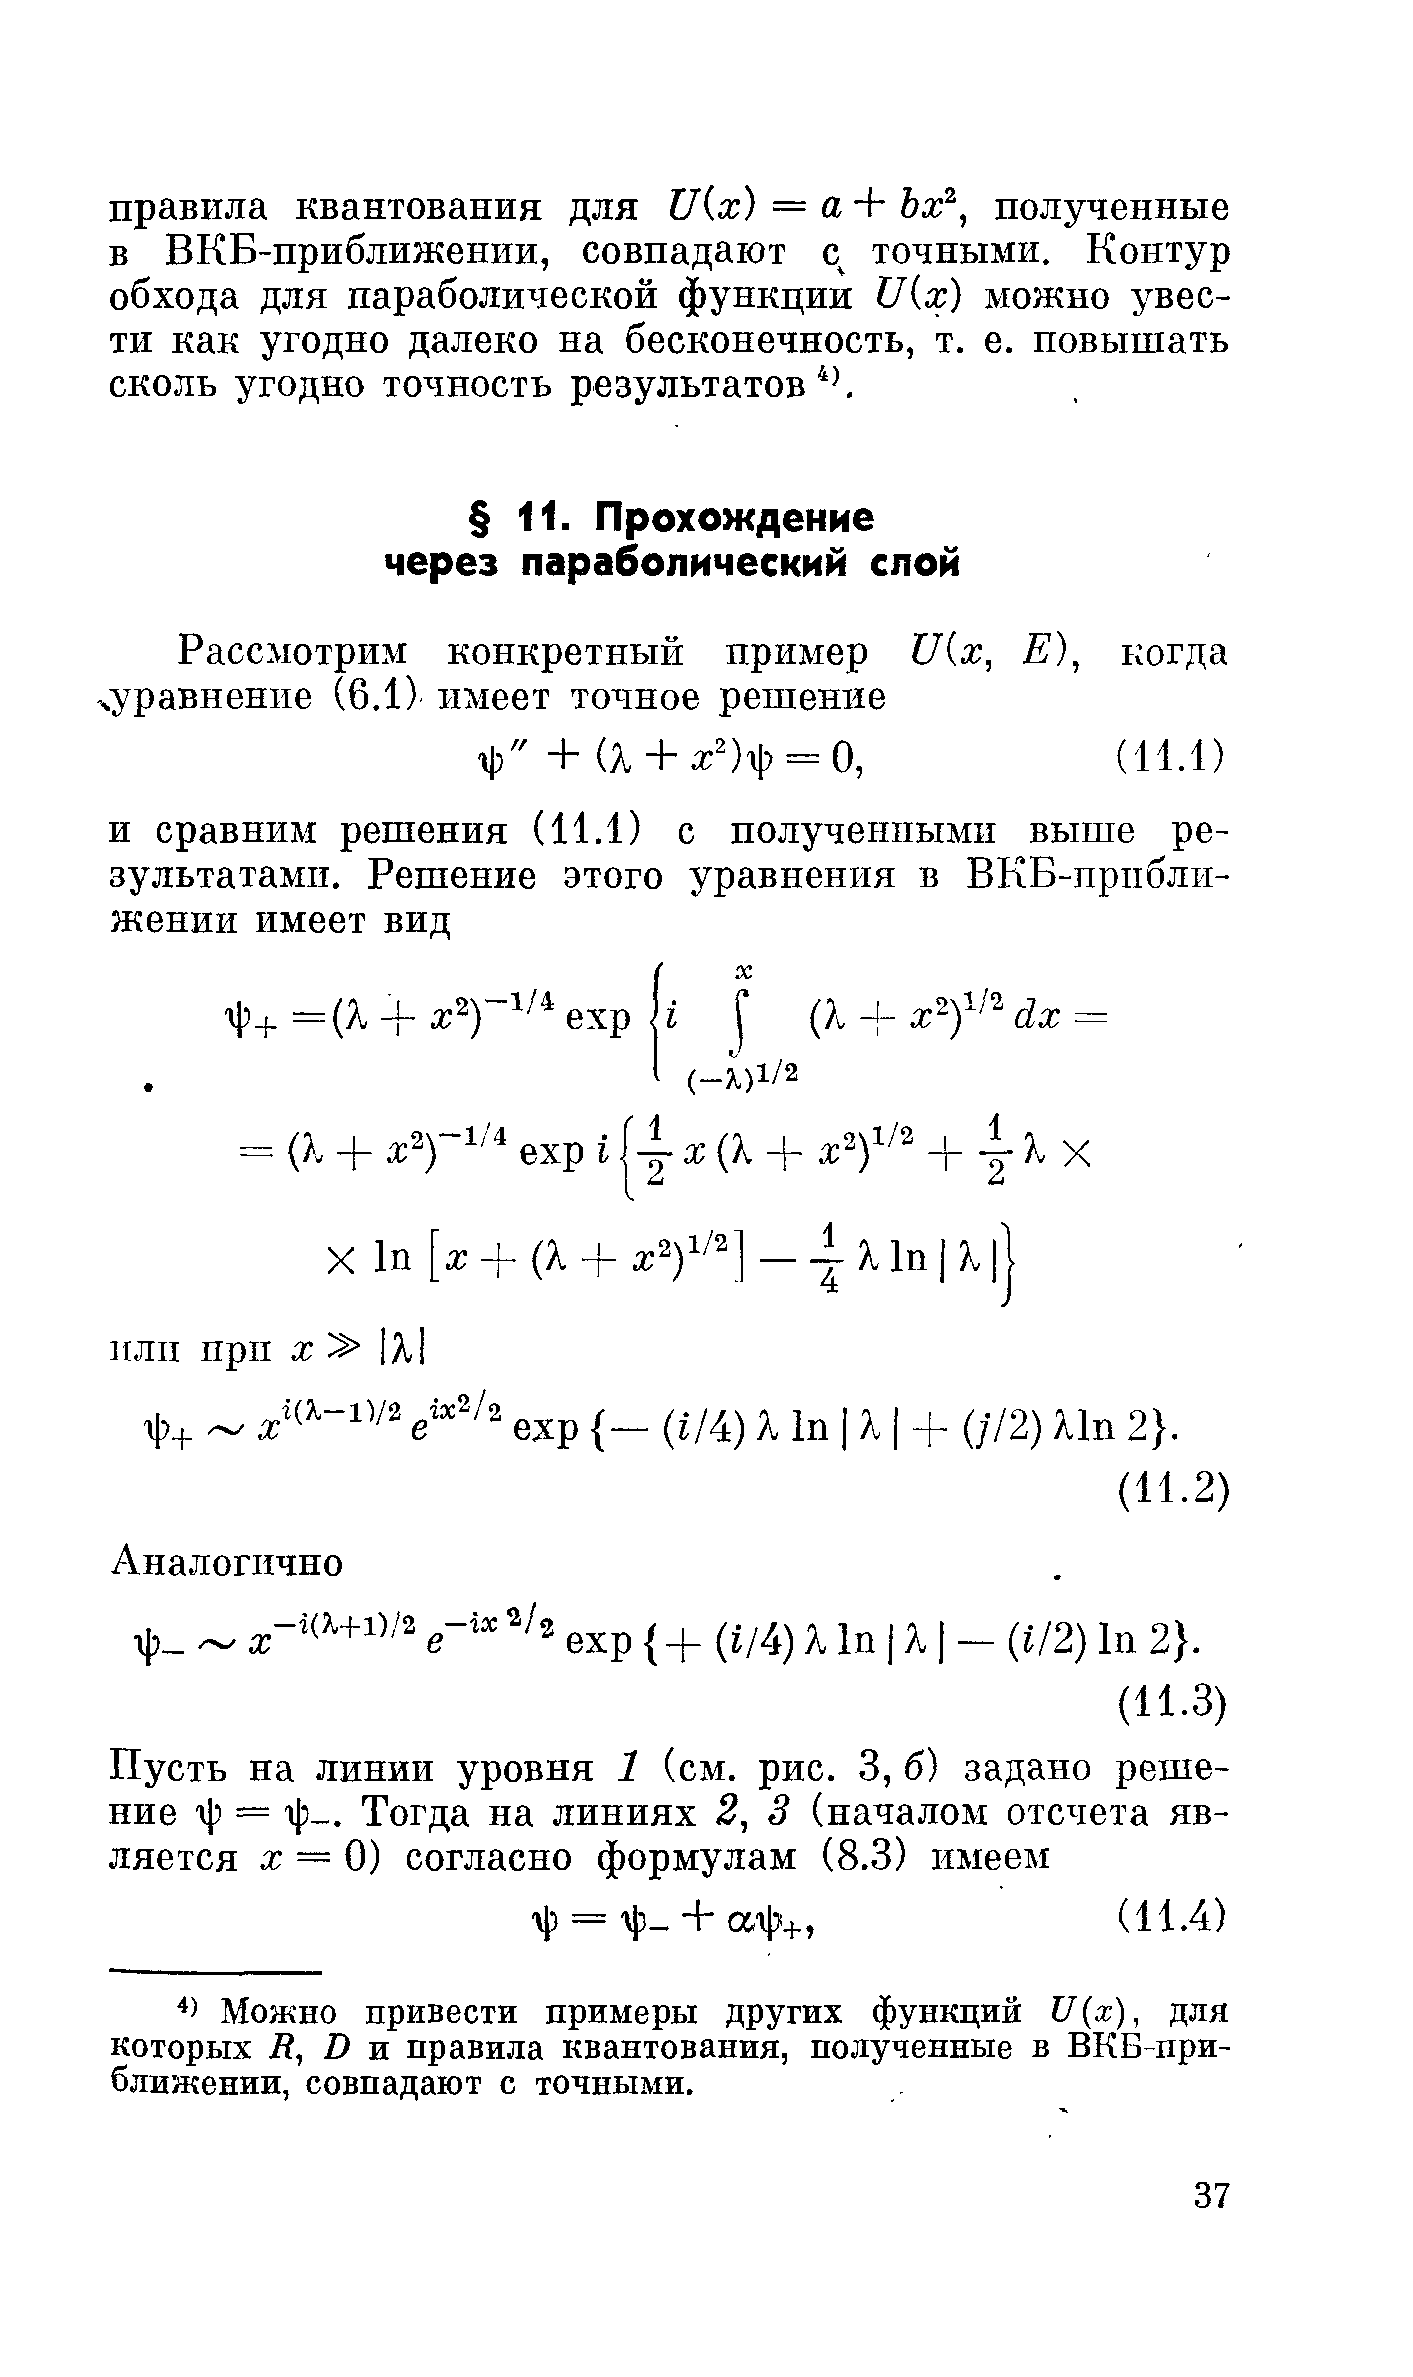 Можно привести примеры других функций и х), для которых Н, В и правила квантования, полученные в ВКБ-при-блишении, совпадают с точными.
